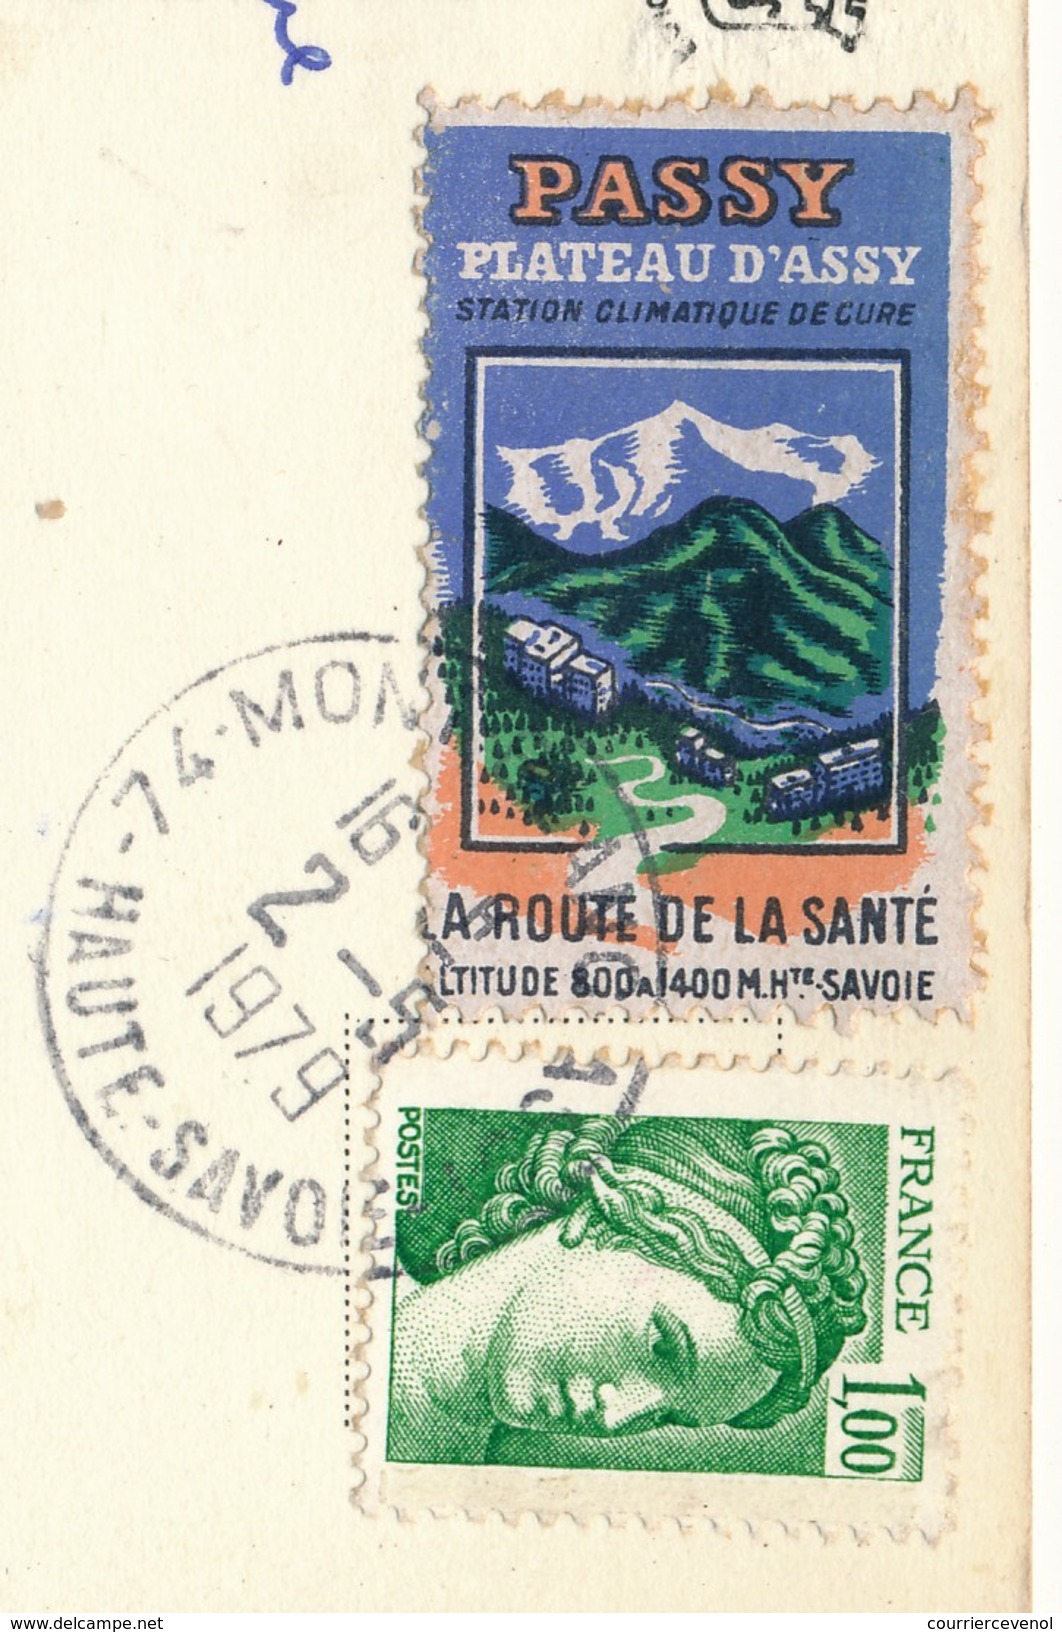 FRANCE => Vignette "Passy, Plateau D'Assy - La Route De La Santé" Sur Carte Postale 1979 - Covers & Documents